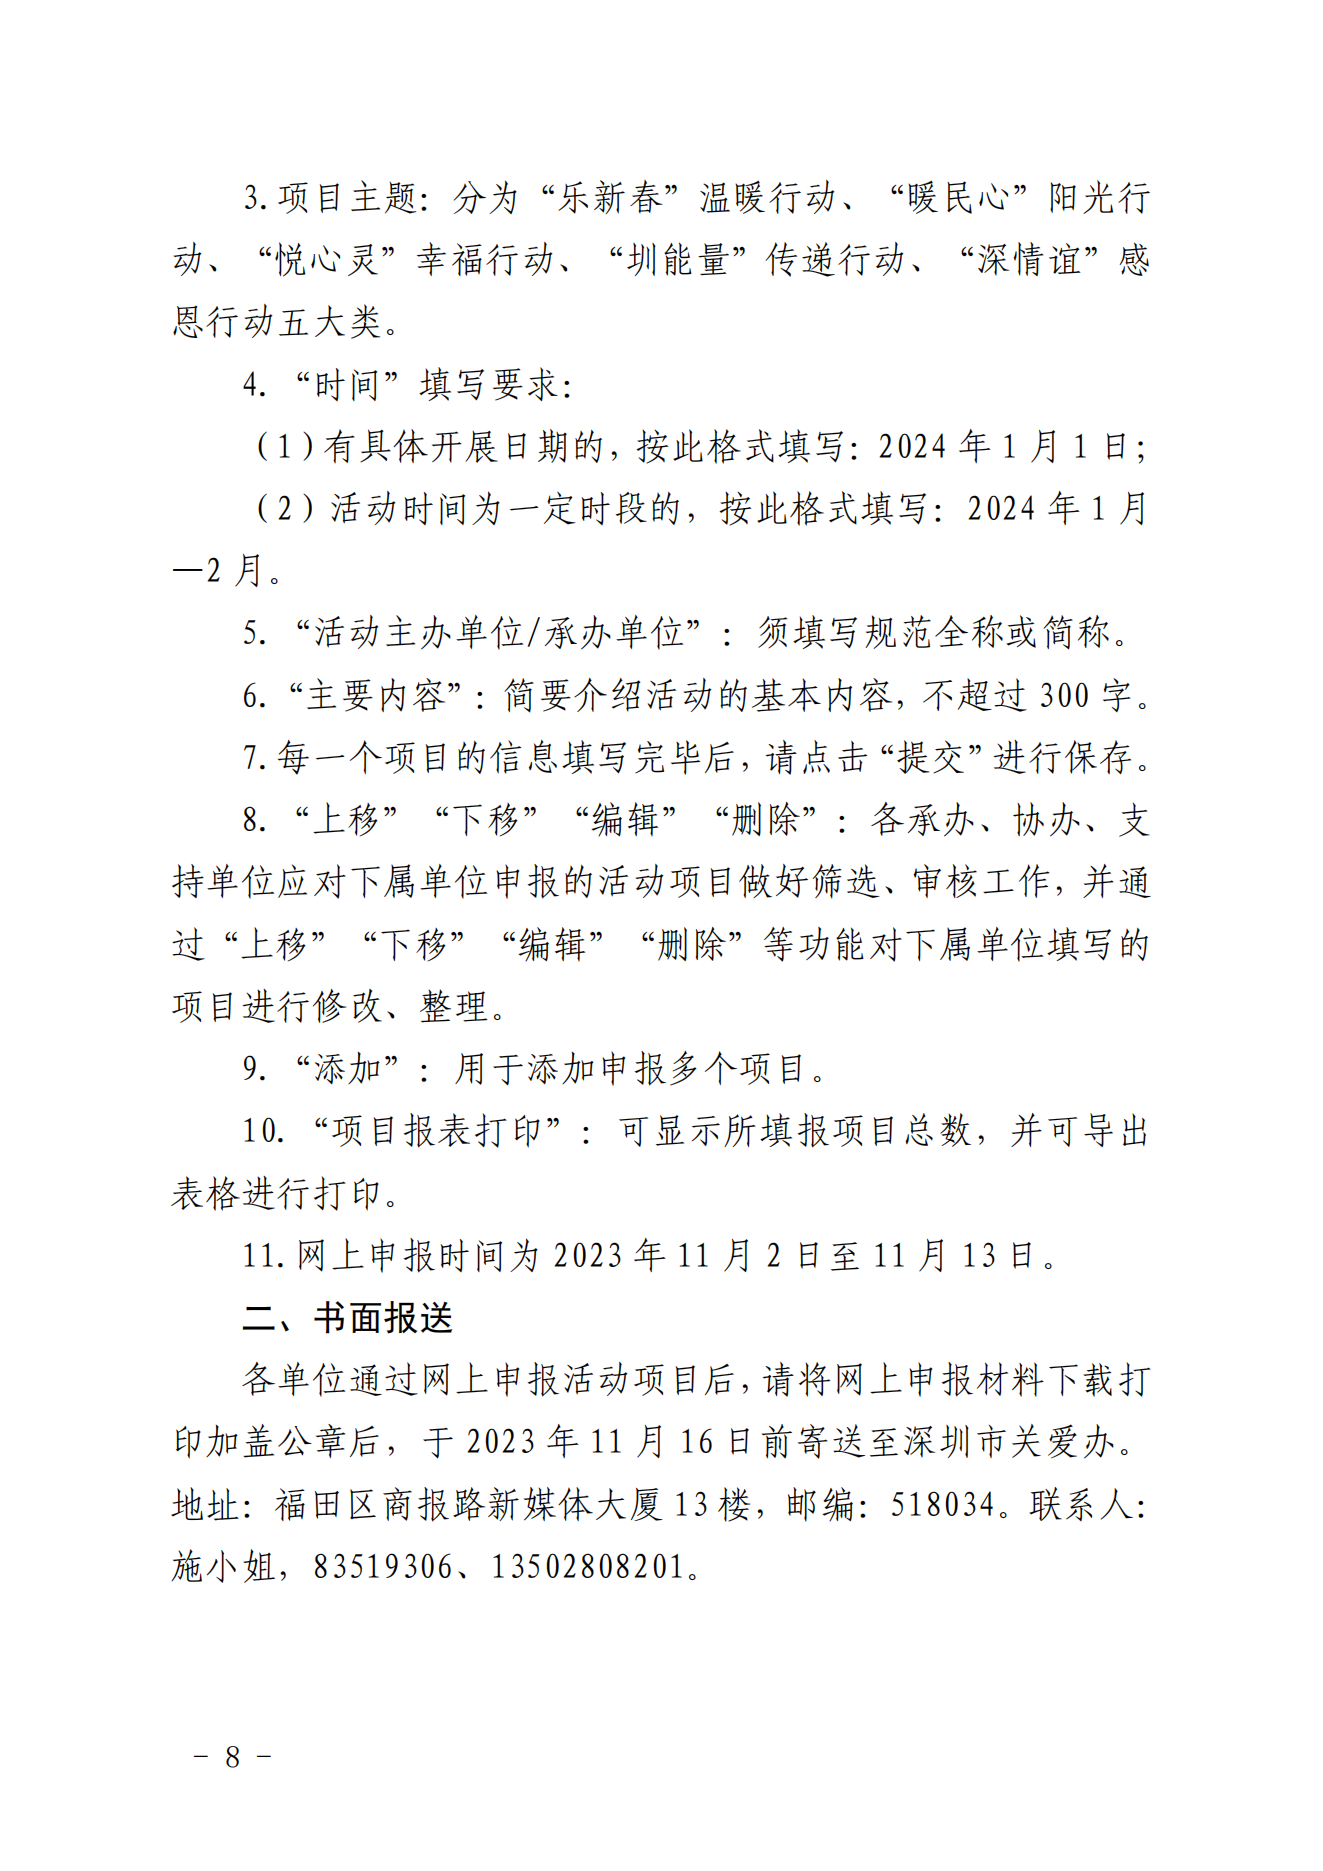 【定稿】关于做好第二十一届深圳关爱行动组织策划和项目申报工作的通知_07.png